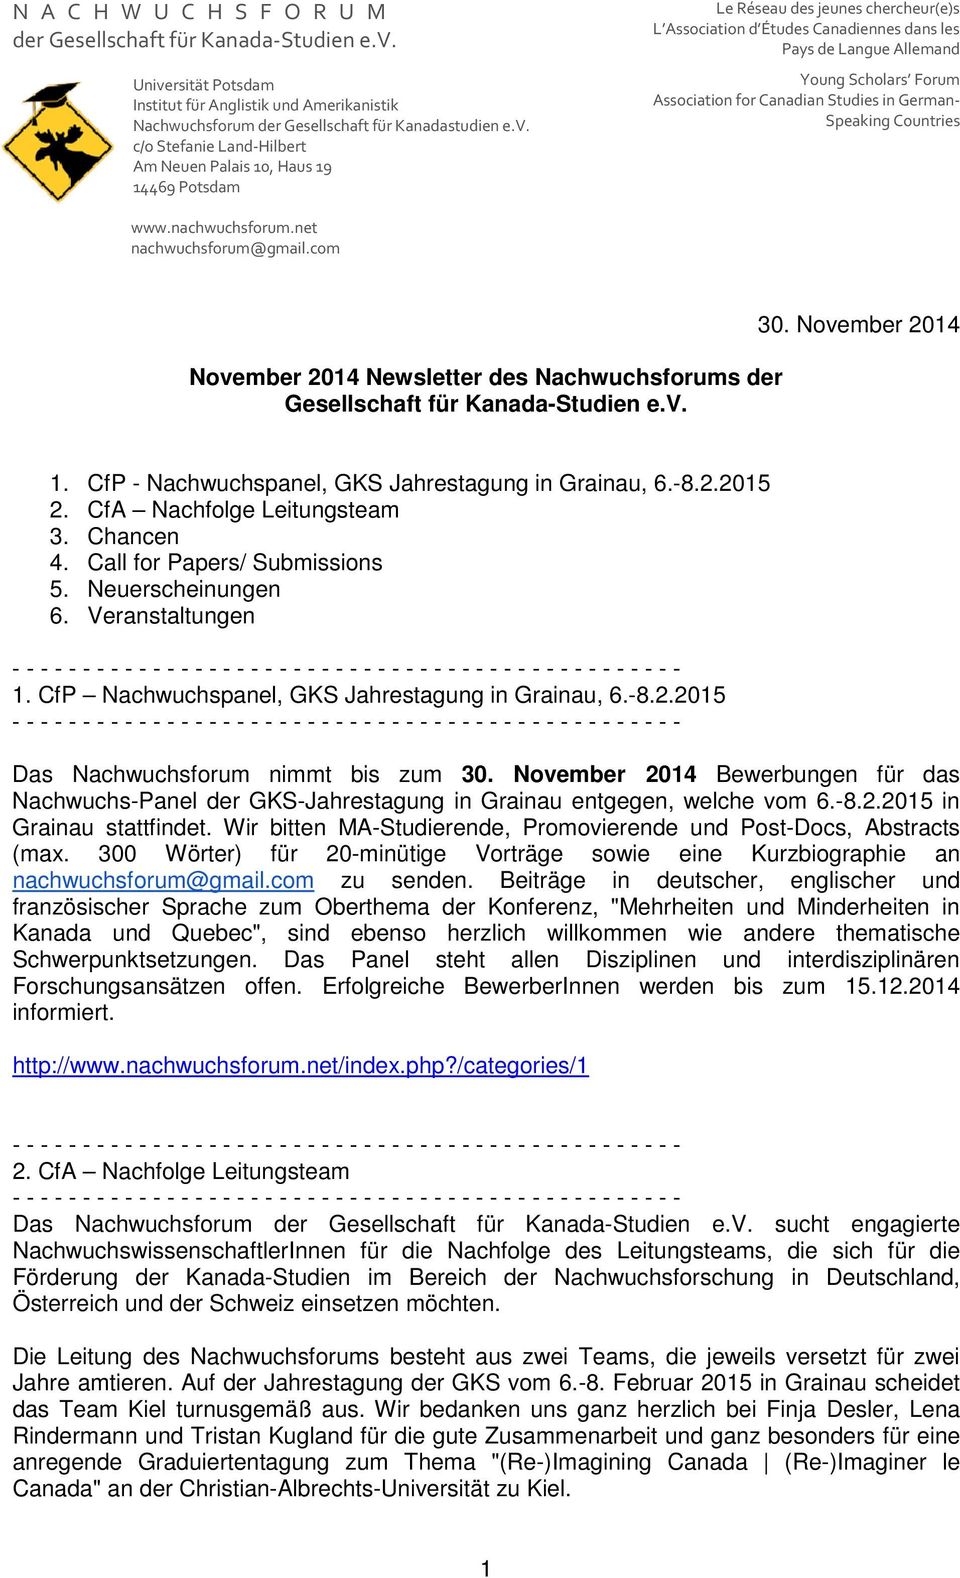 2015 Das Nachwuchsforum nimmt bis zum 30. November 2014 Bewerbungen für das Nachwuchs-Panel der GKS-Jahrestagung in Grainau entgegen, welche vom 6.-8.2.2015 in Grainau stattfindet.